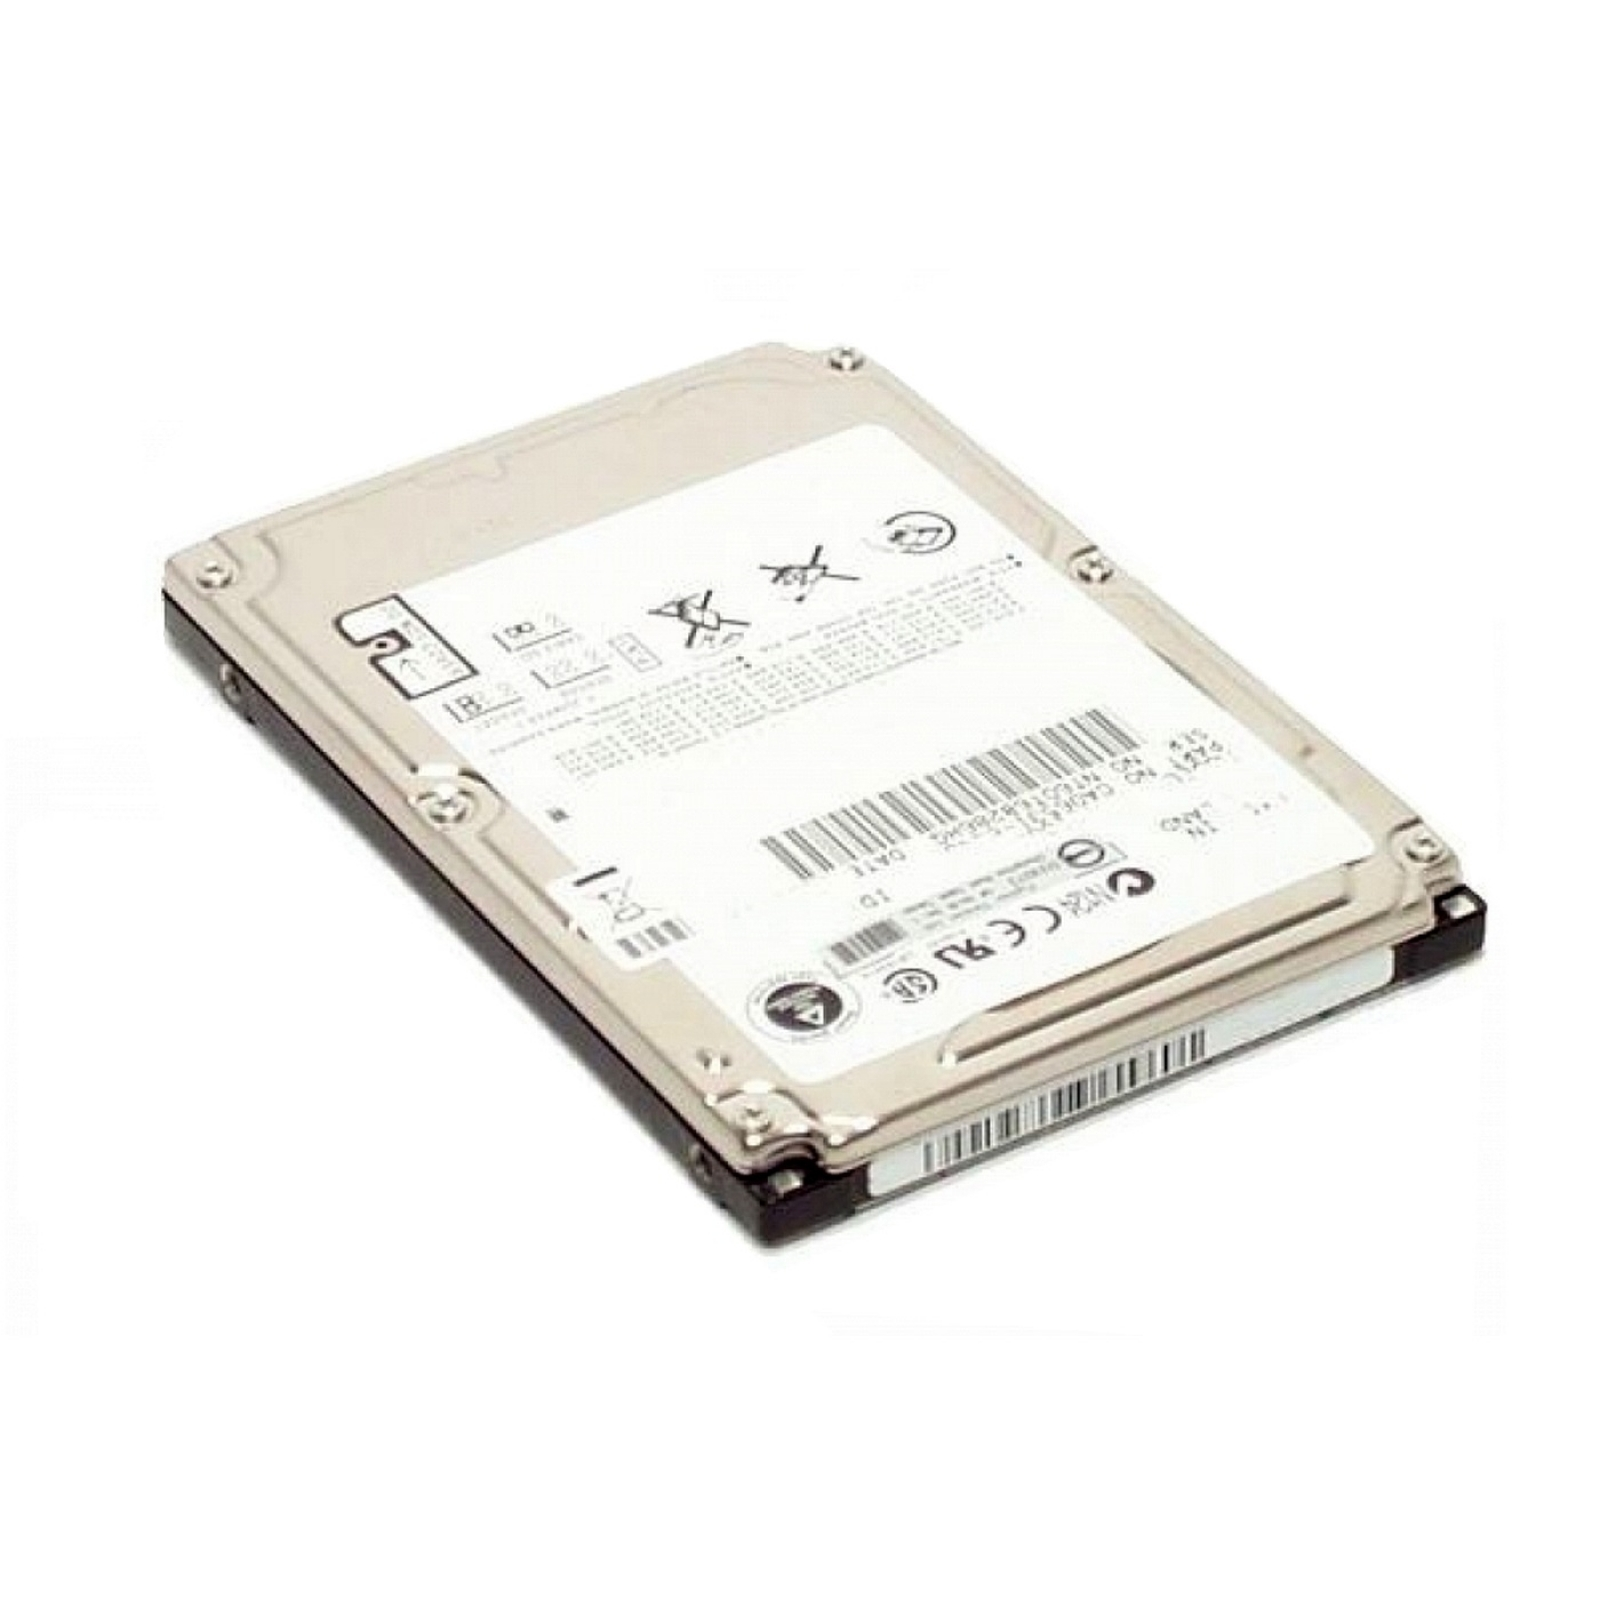 GB, für WESTERN 16MB intern LifeBook 5400rpm, Festplatte DIGITAL HDD, 500GB, FUJITSU 500 T730,